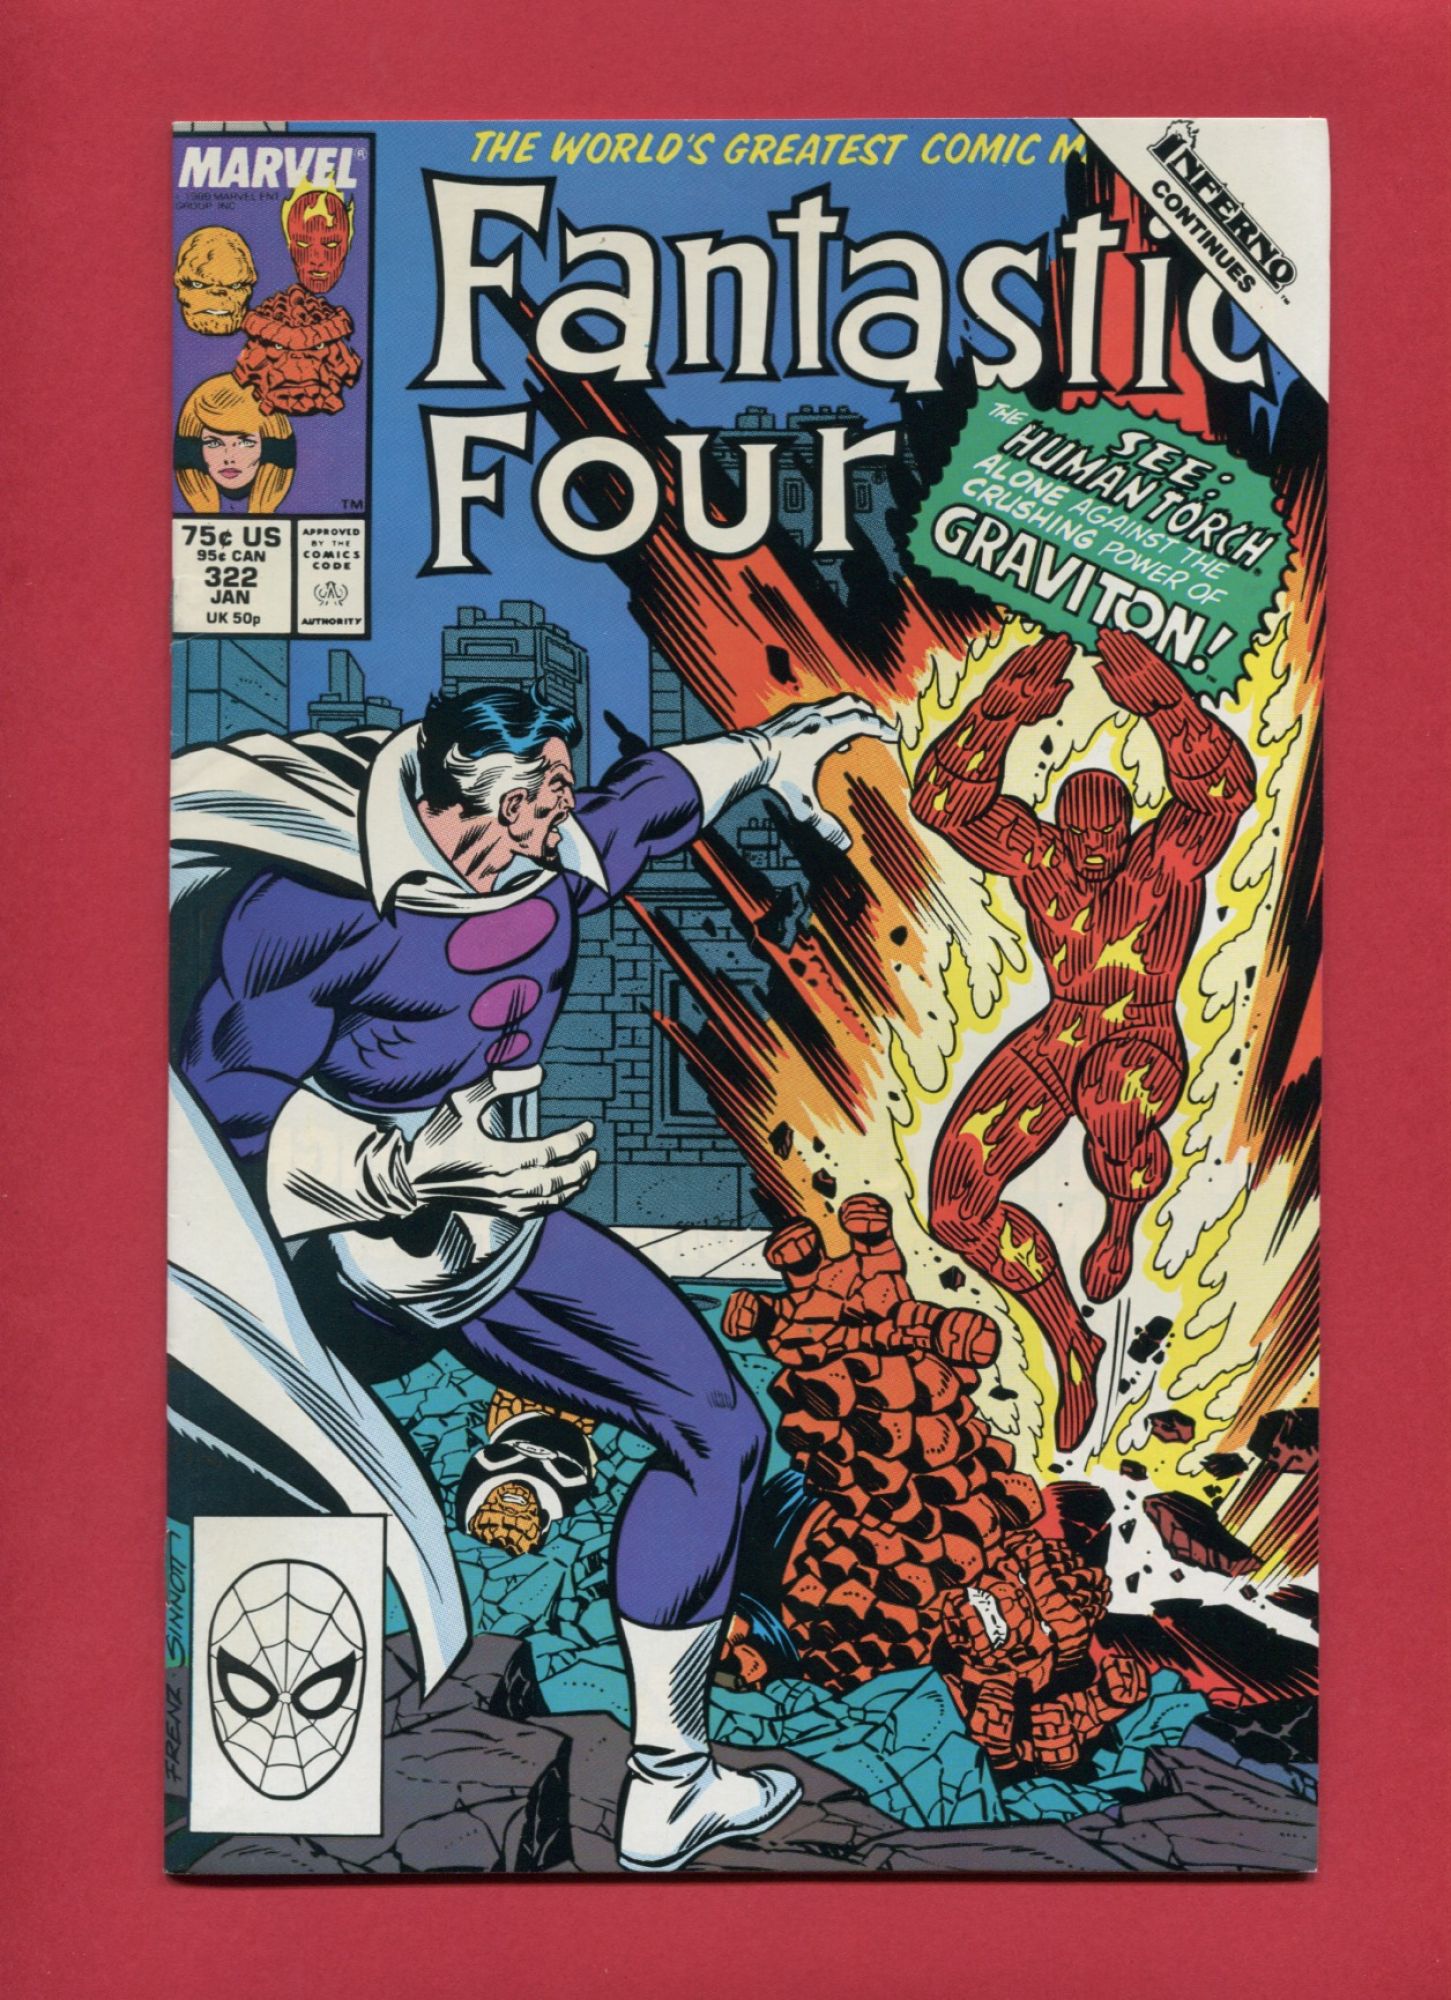 Fantastic Four #322, Jan 1989, 9.2 NM-